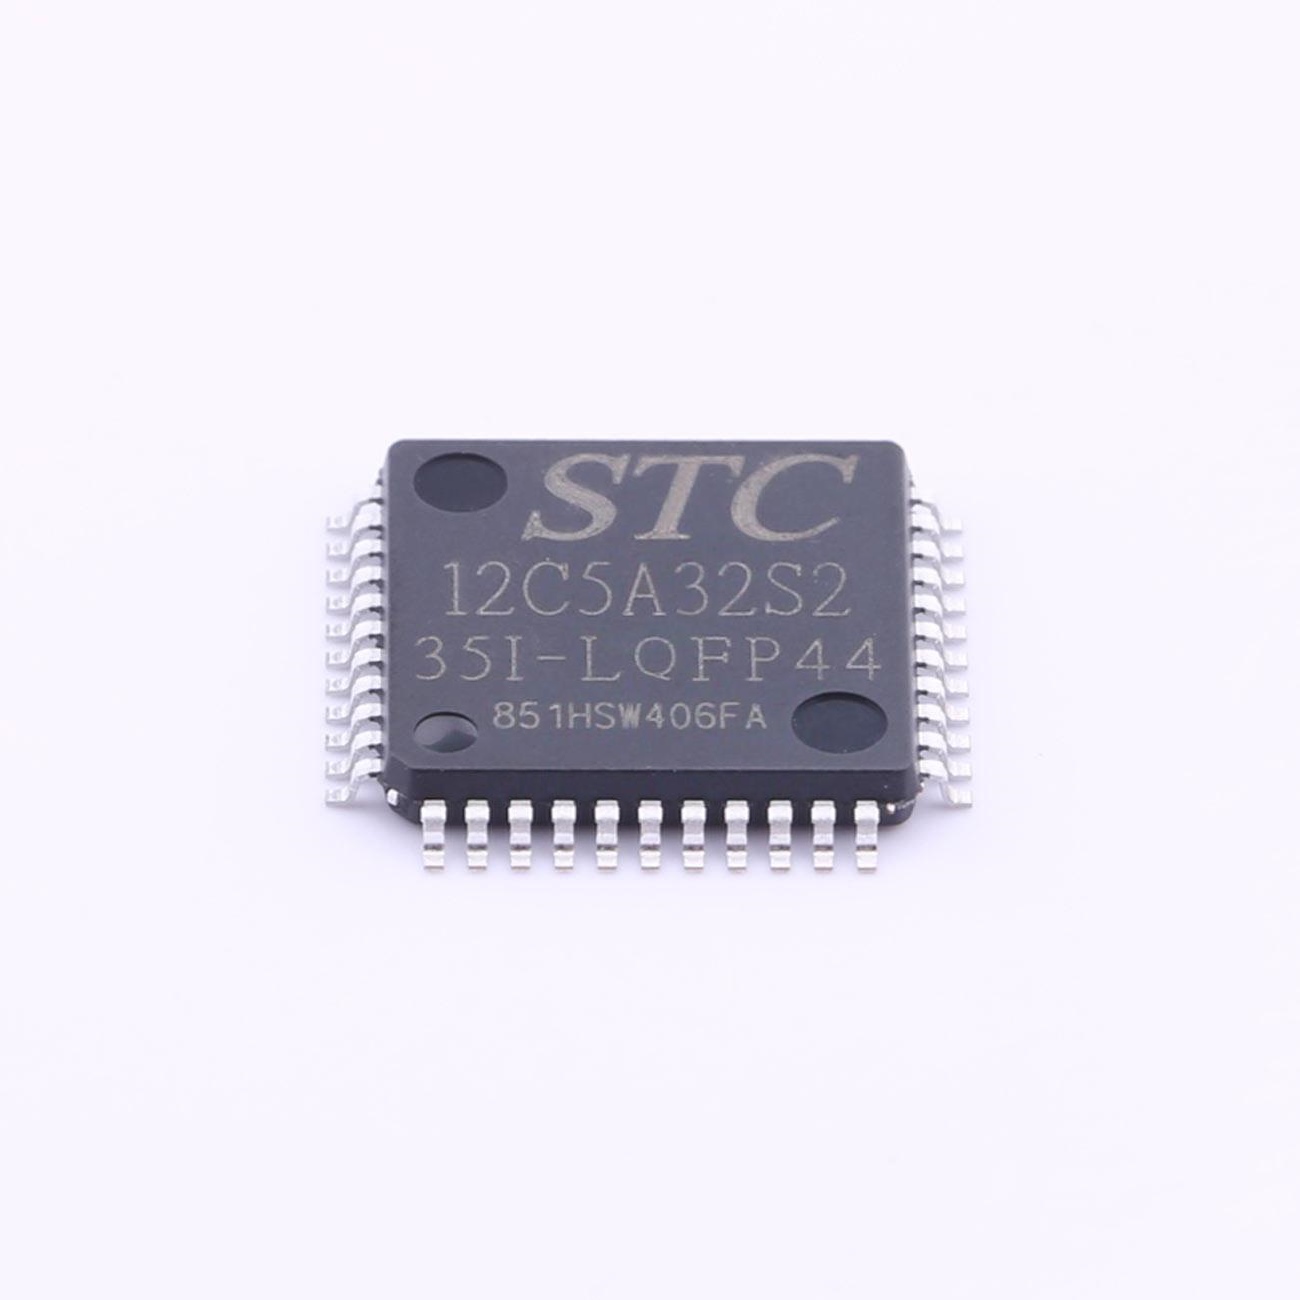 STC12C5A32S2-35I-LQFP44